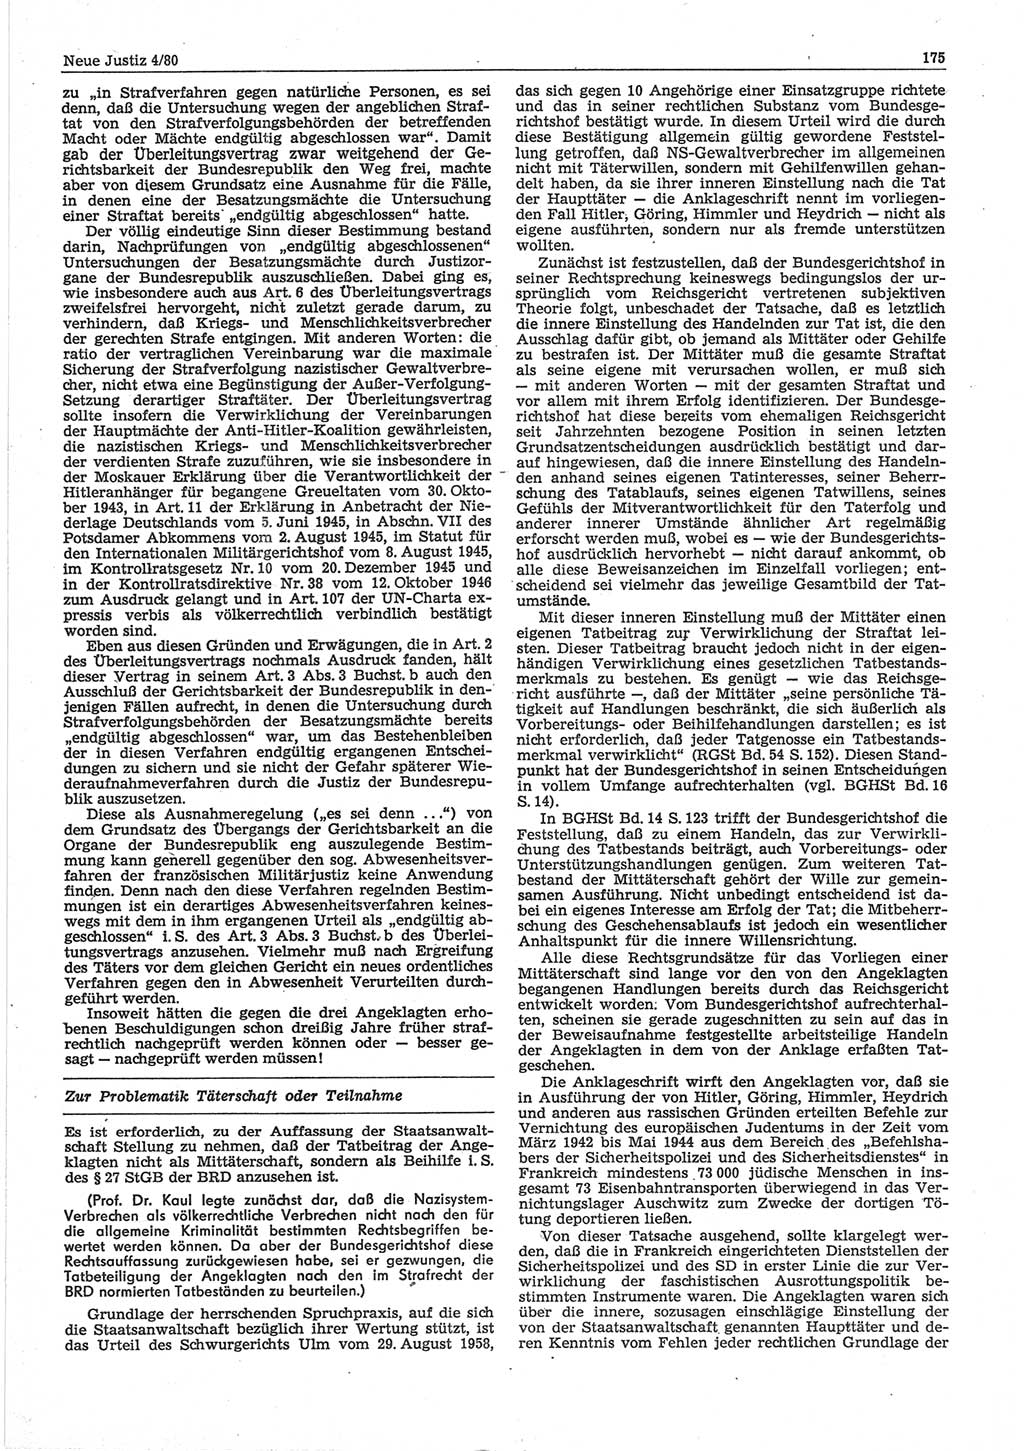 Neue Justiz (NJ), Zeitschrift für sozialistisches Recht und Gesetzlichkeit [Deutsche Demokratische Republik (DDR)], 34. Jahrgang 1980, Seite 175 (NJ DDR 1980, S. 175)